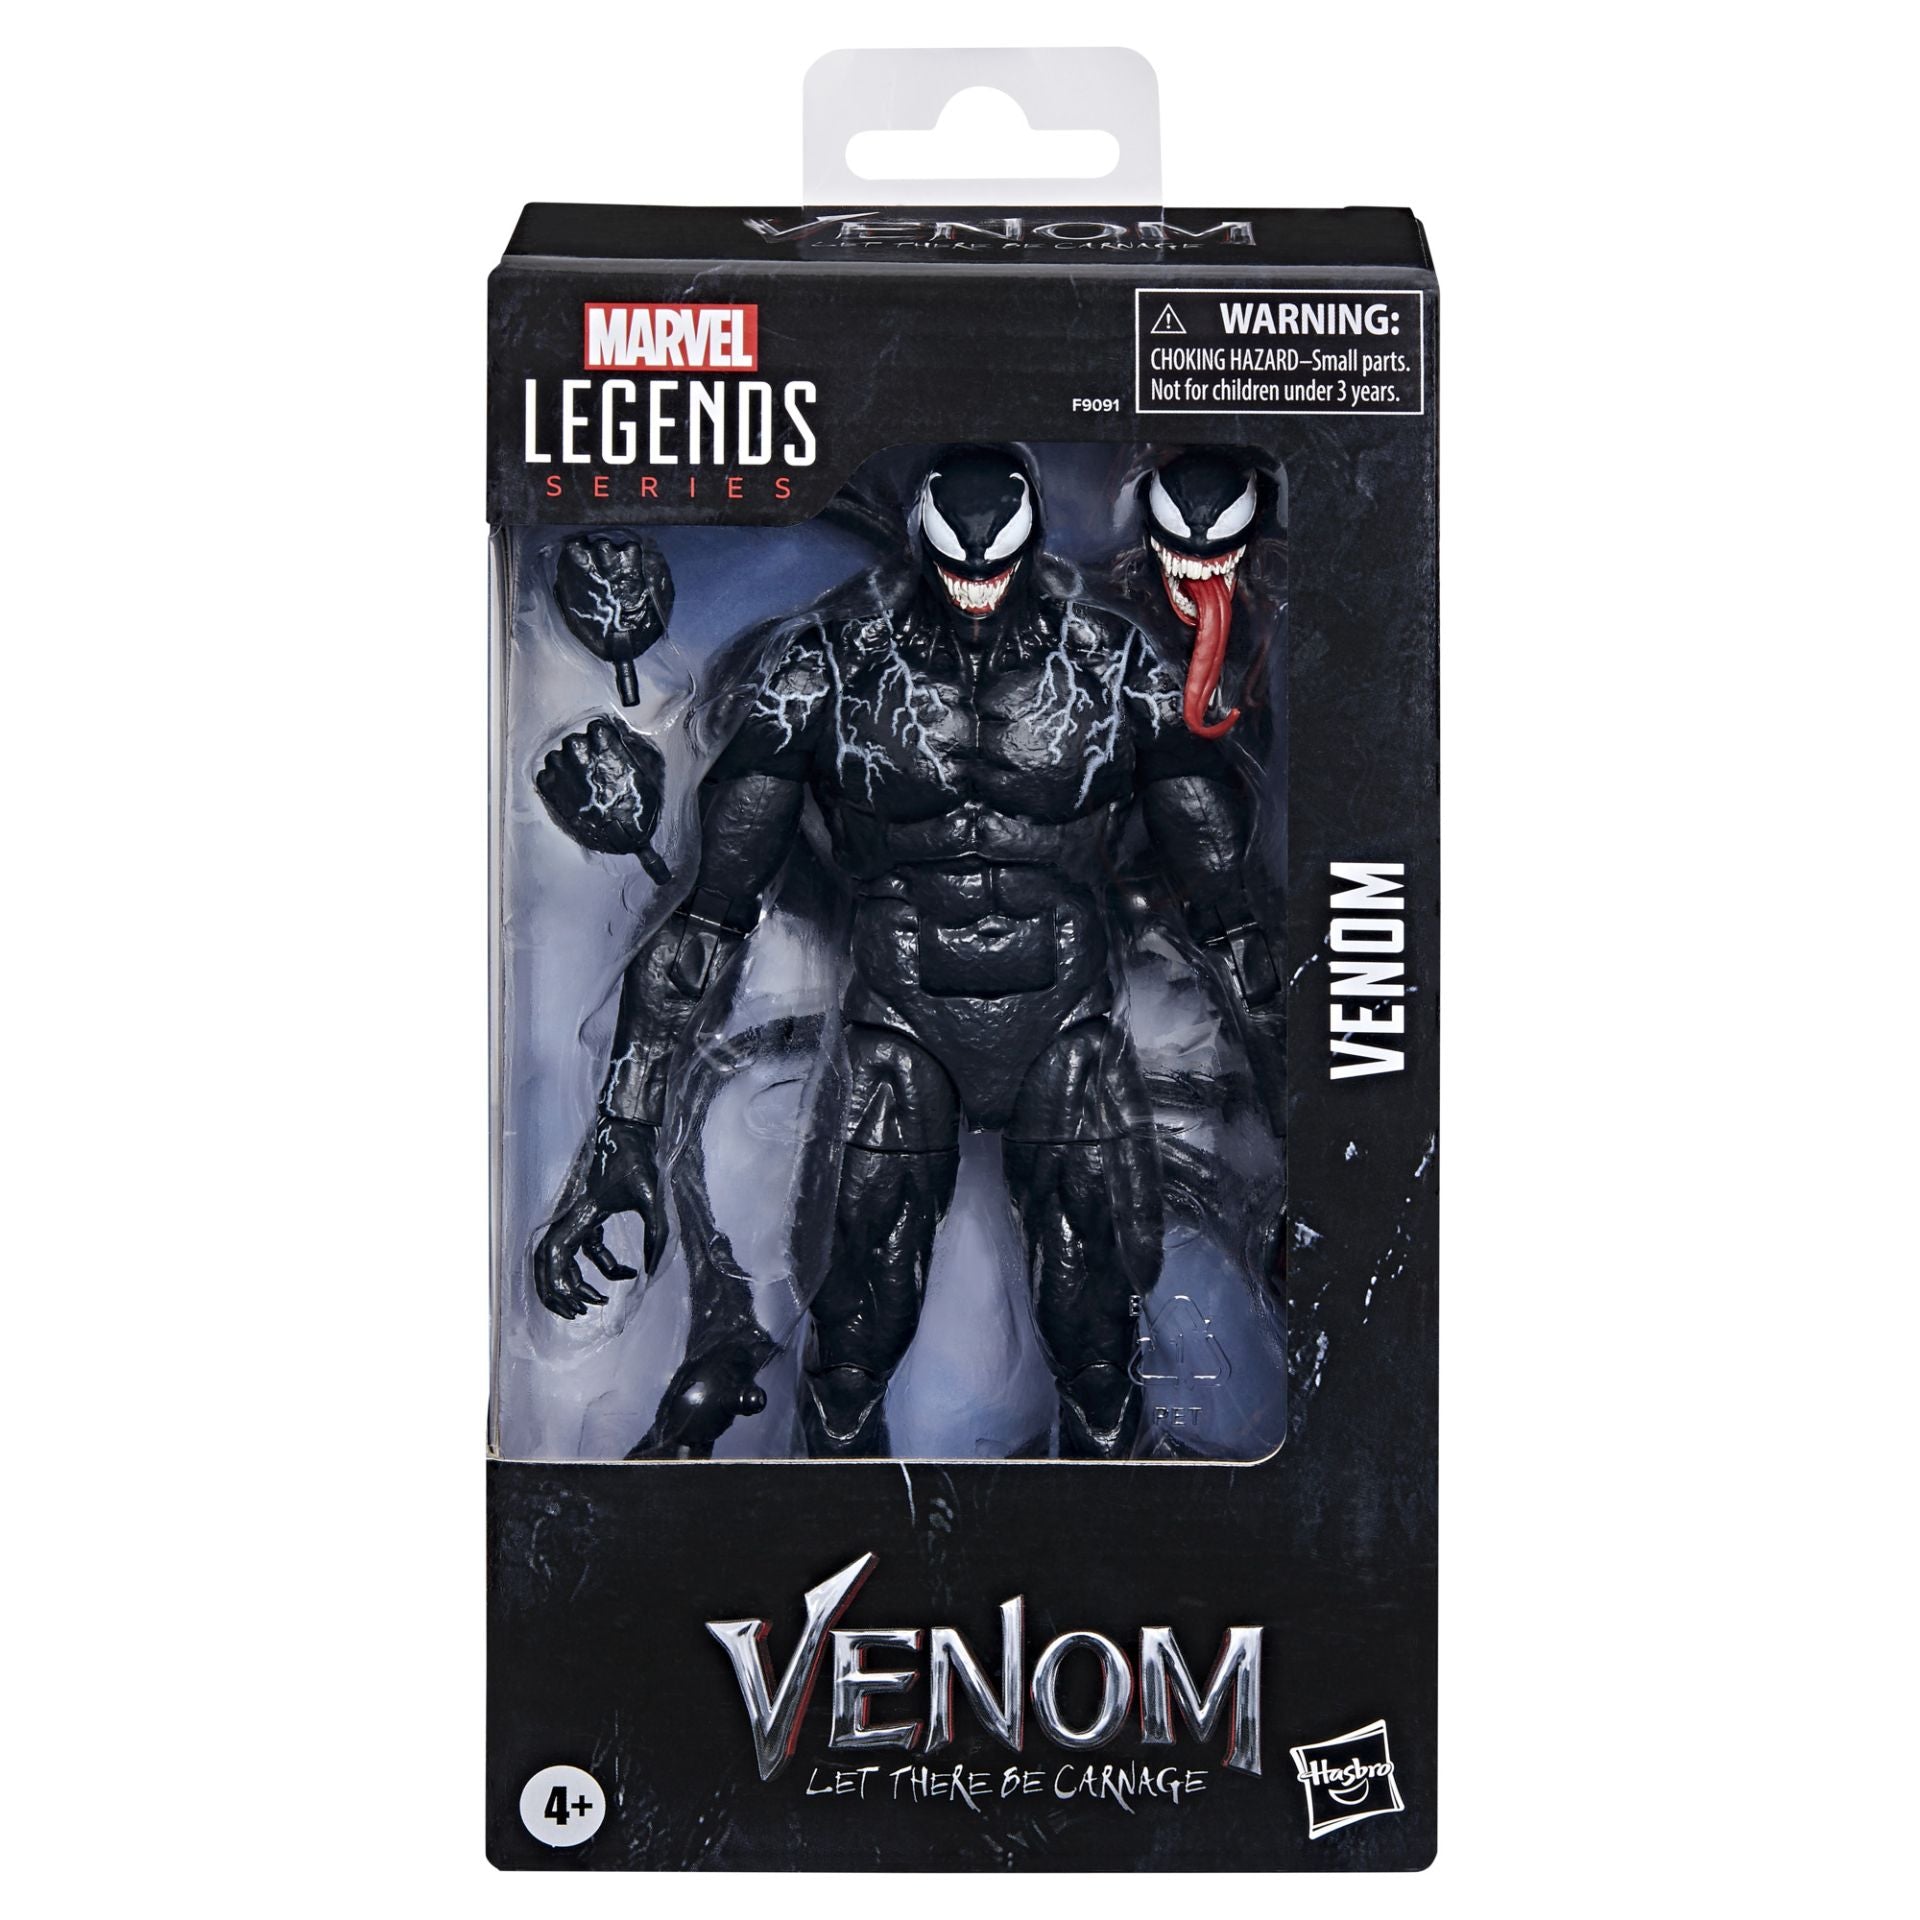 Marvel Legends 6" Venom Let There Be Carnage